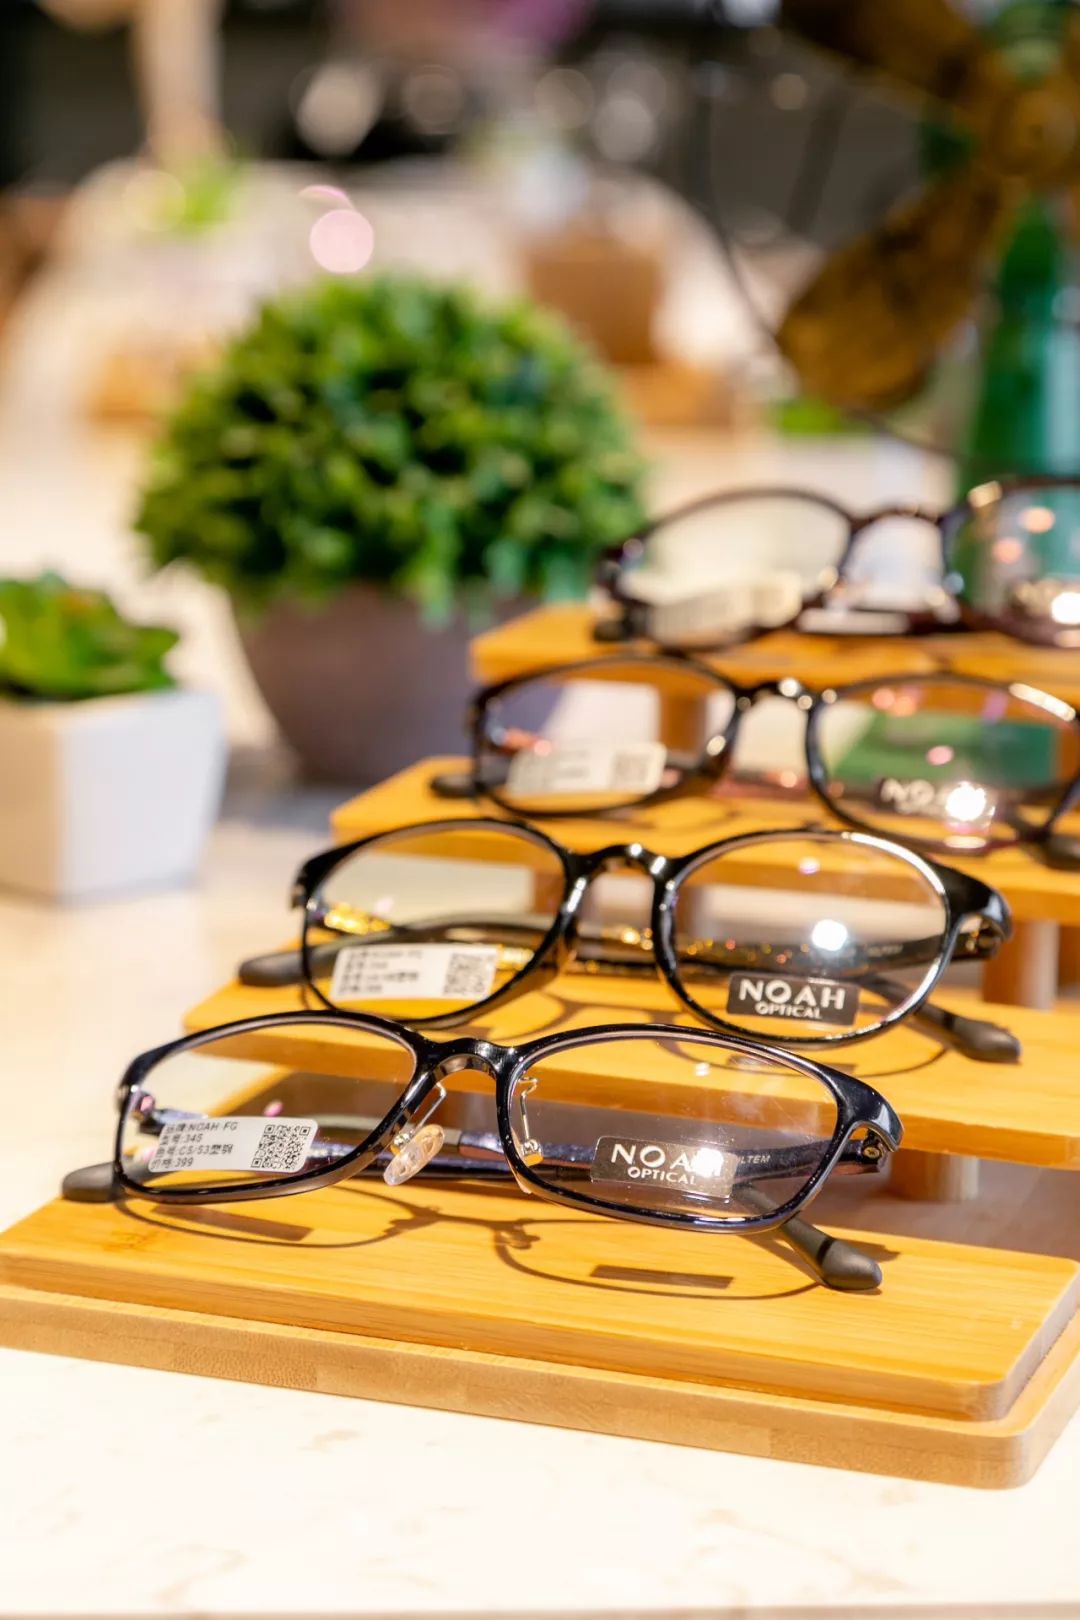 平价眼镜店_泉州眼镜平价超市_平价眼镜团购